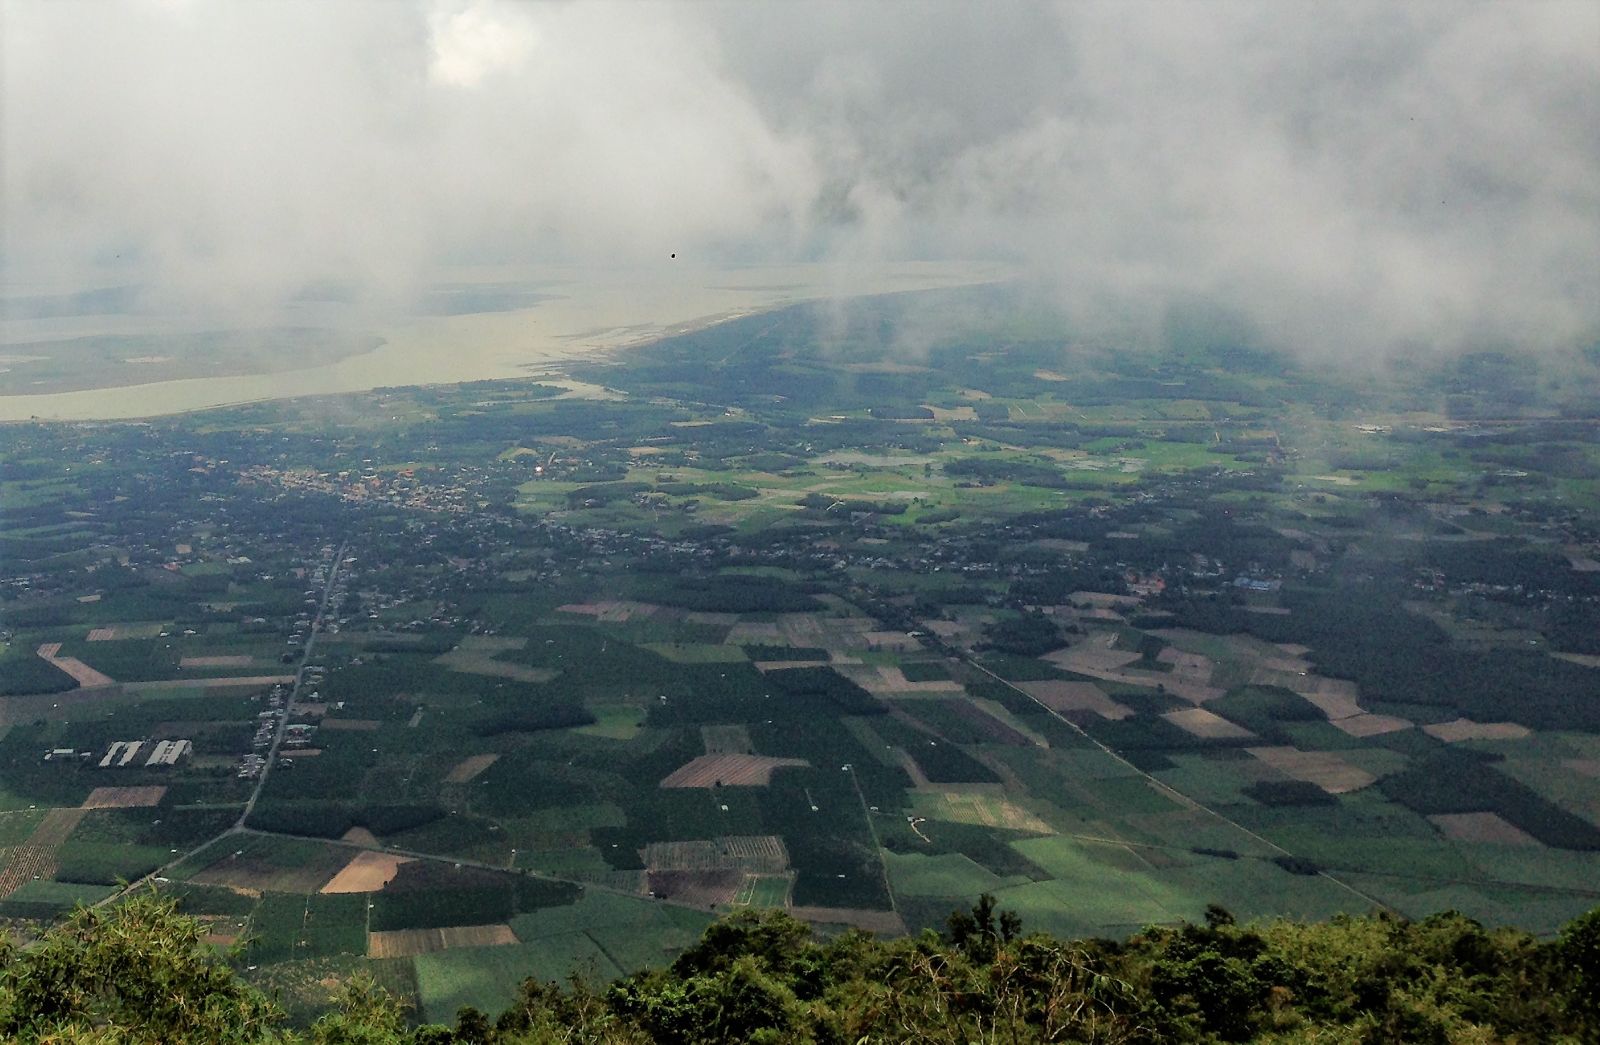 Từ đỉnh núi Bà Đen nhìn xuống thấy mây bay là đà trên ruộng đồng bao la.